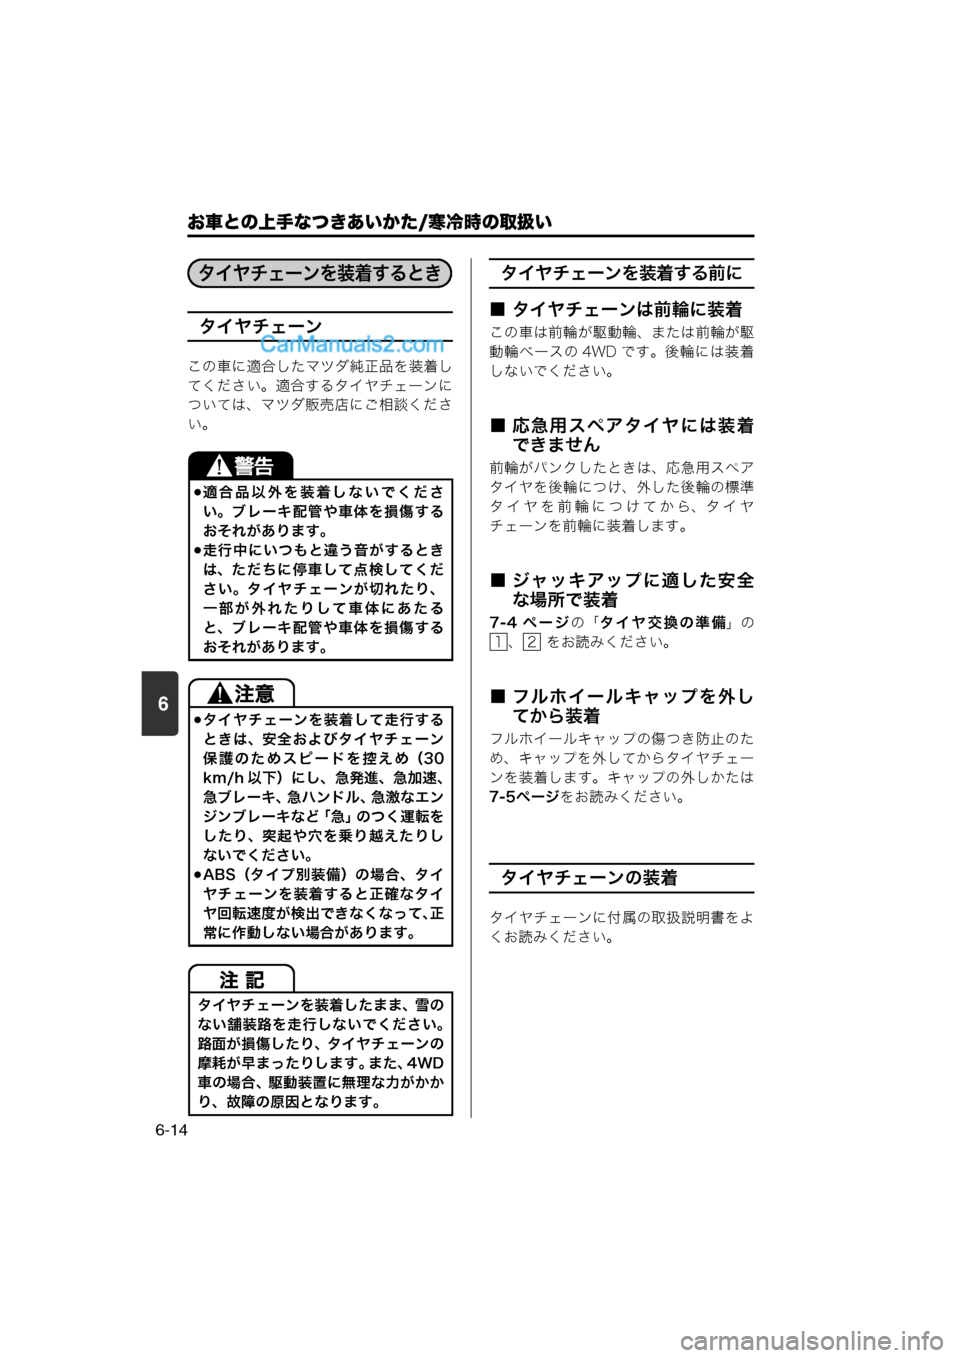 MAZDA MODEL CARROL 2013  取扱説明書 (キャロル) (in Japanese) 6
お車との上手なつきあいかた/寒冷時の取扱い
6-14
タイヤチェーン
この車に適合したマツダ純正品を装着し
てください。適合するタイヤチェーンに